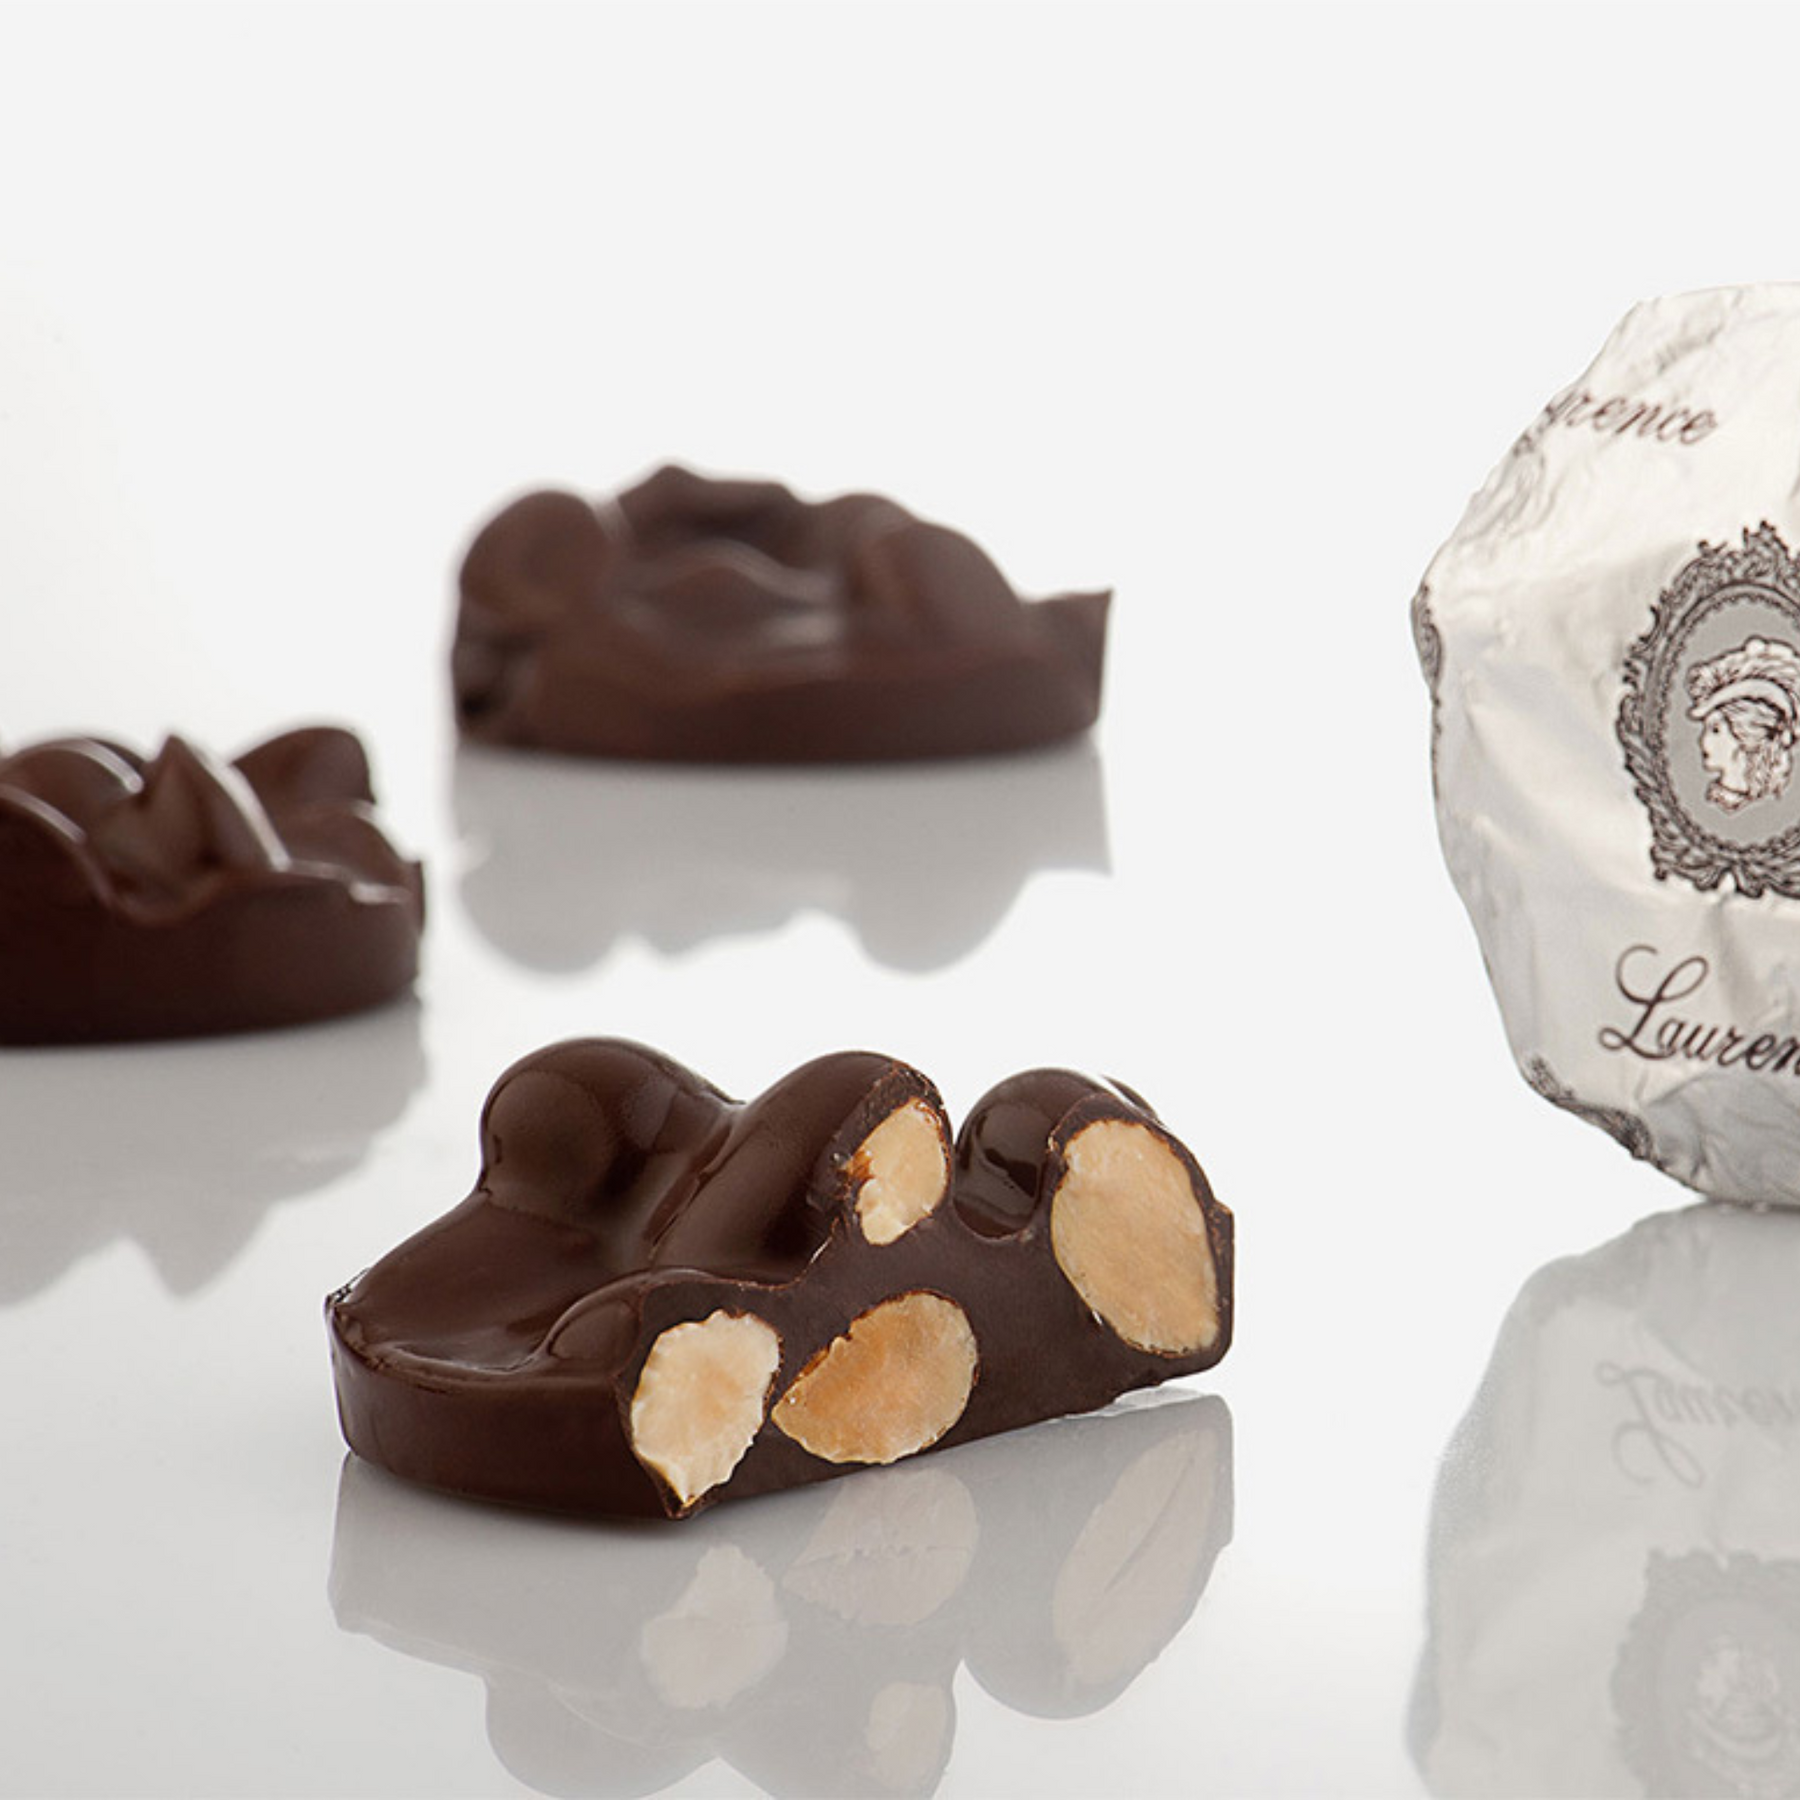 Конфеты из черного шоколада с миндалем/Laurence Anomalo dark chocolate with almonds, 3 шт (≈100 г)